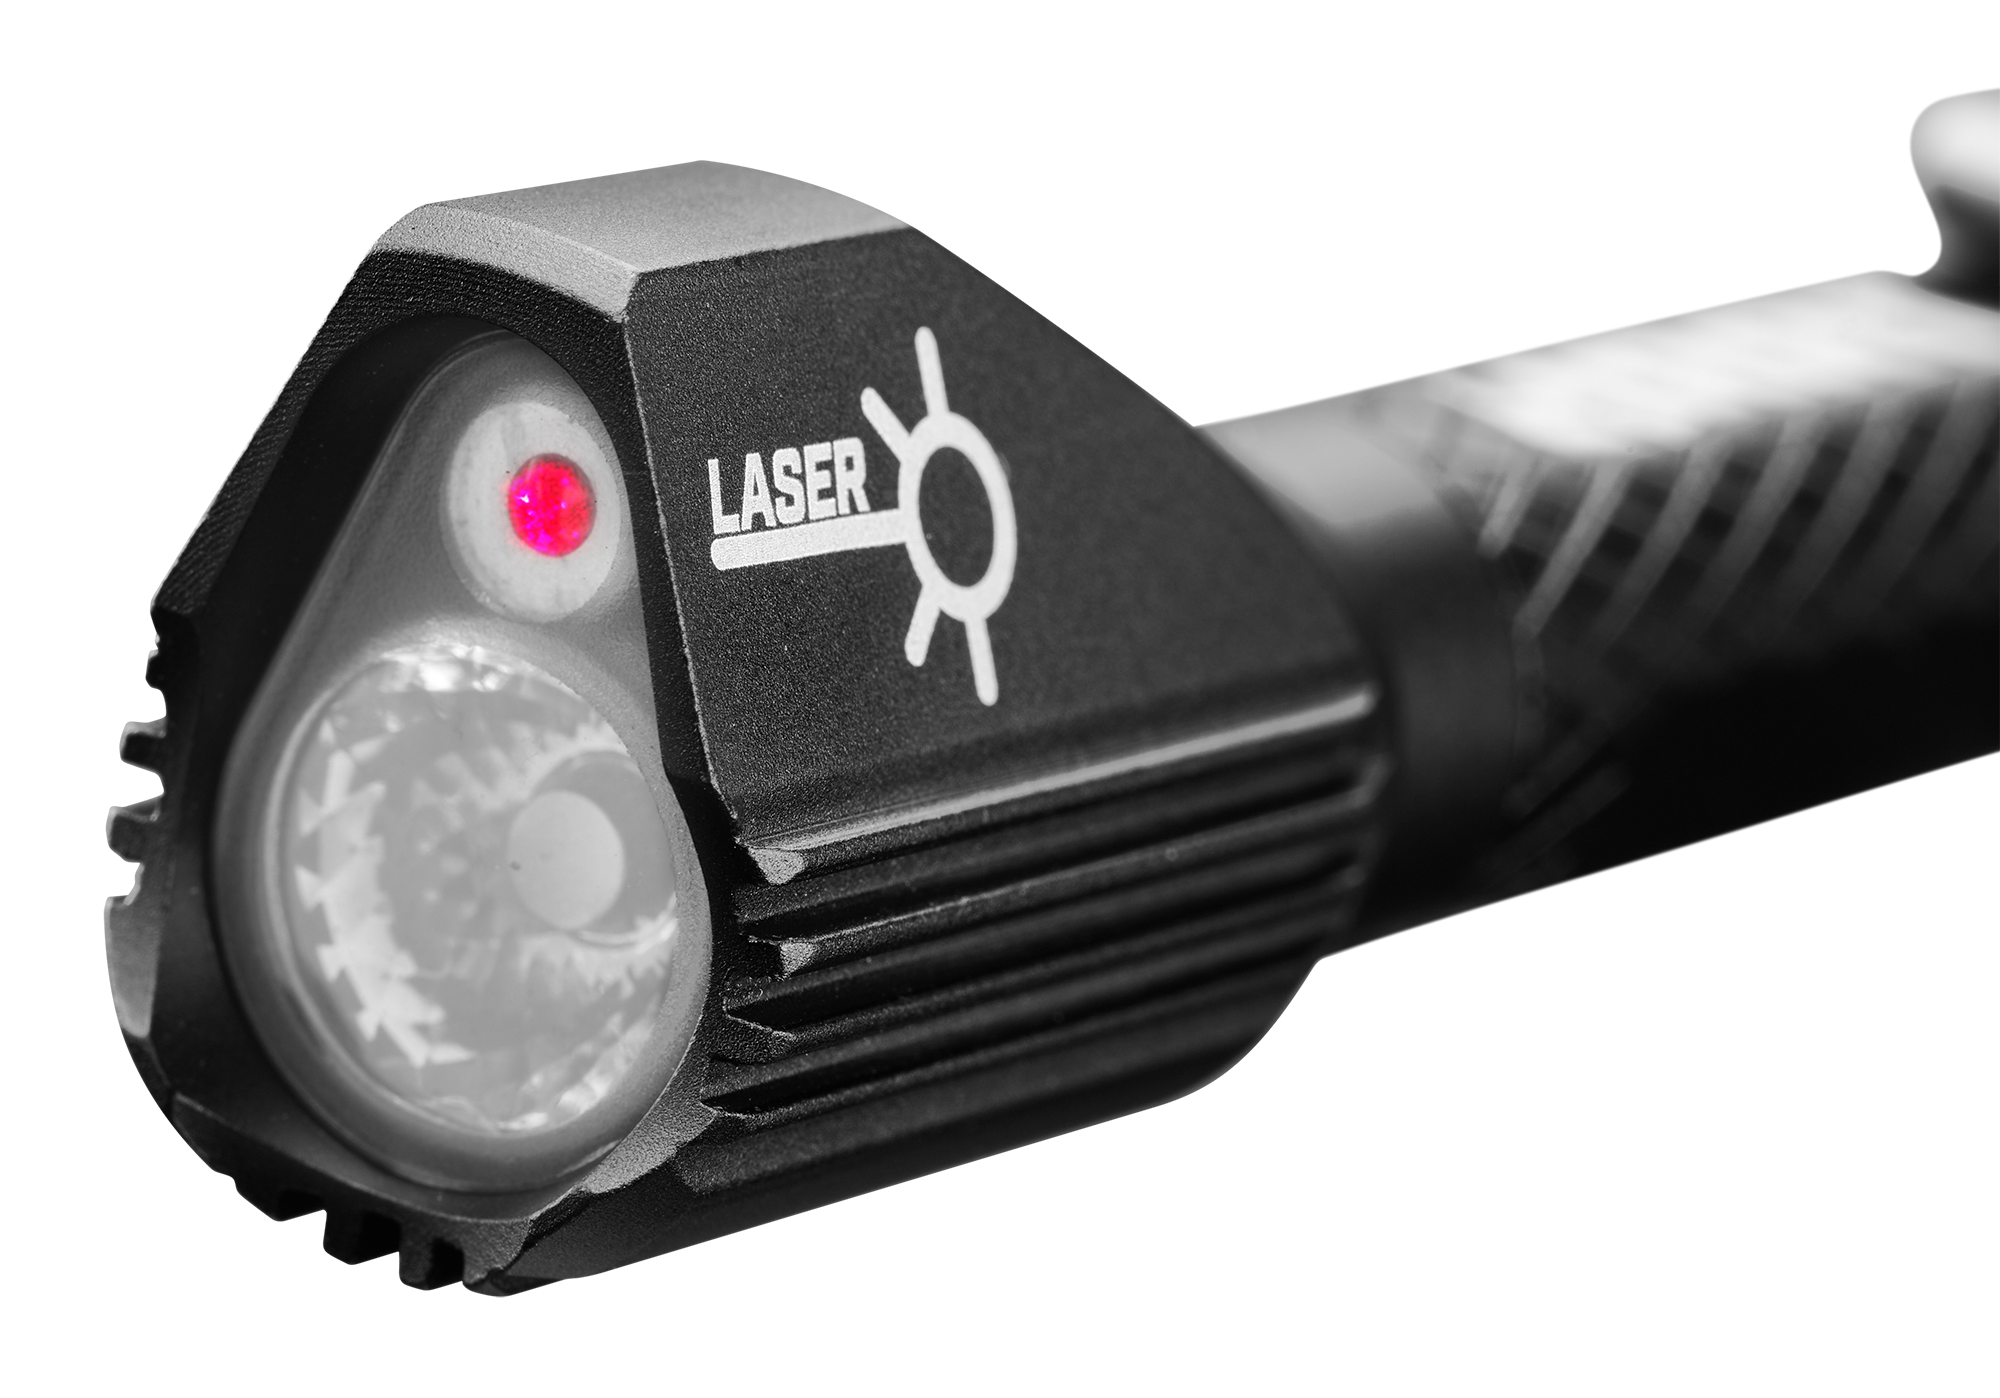 HART LED Pen Light, 150 Lumens, Laser Pointer